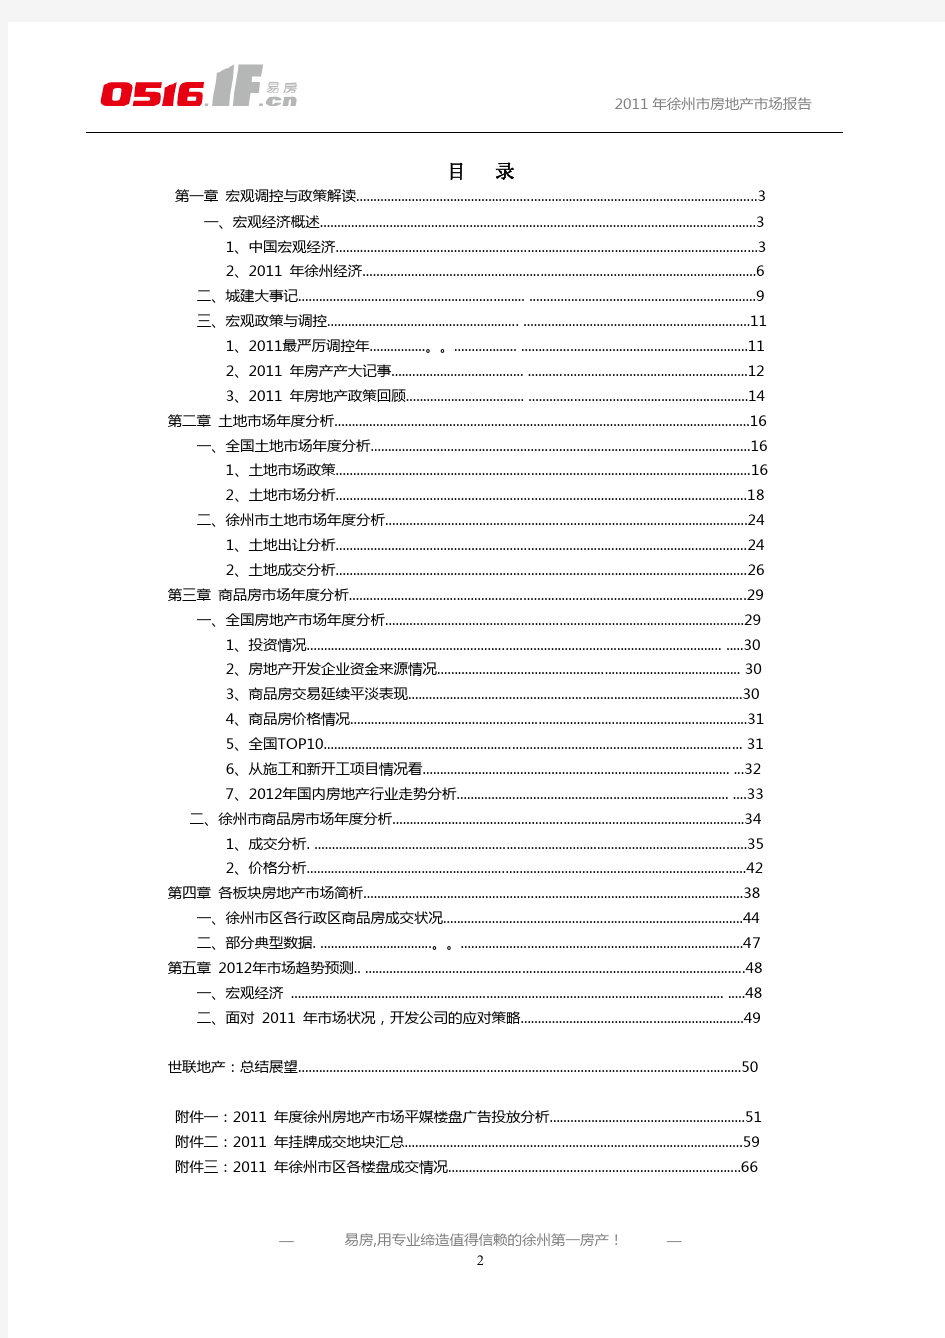 2011年徐州市房地产市场年报--0516出品